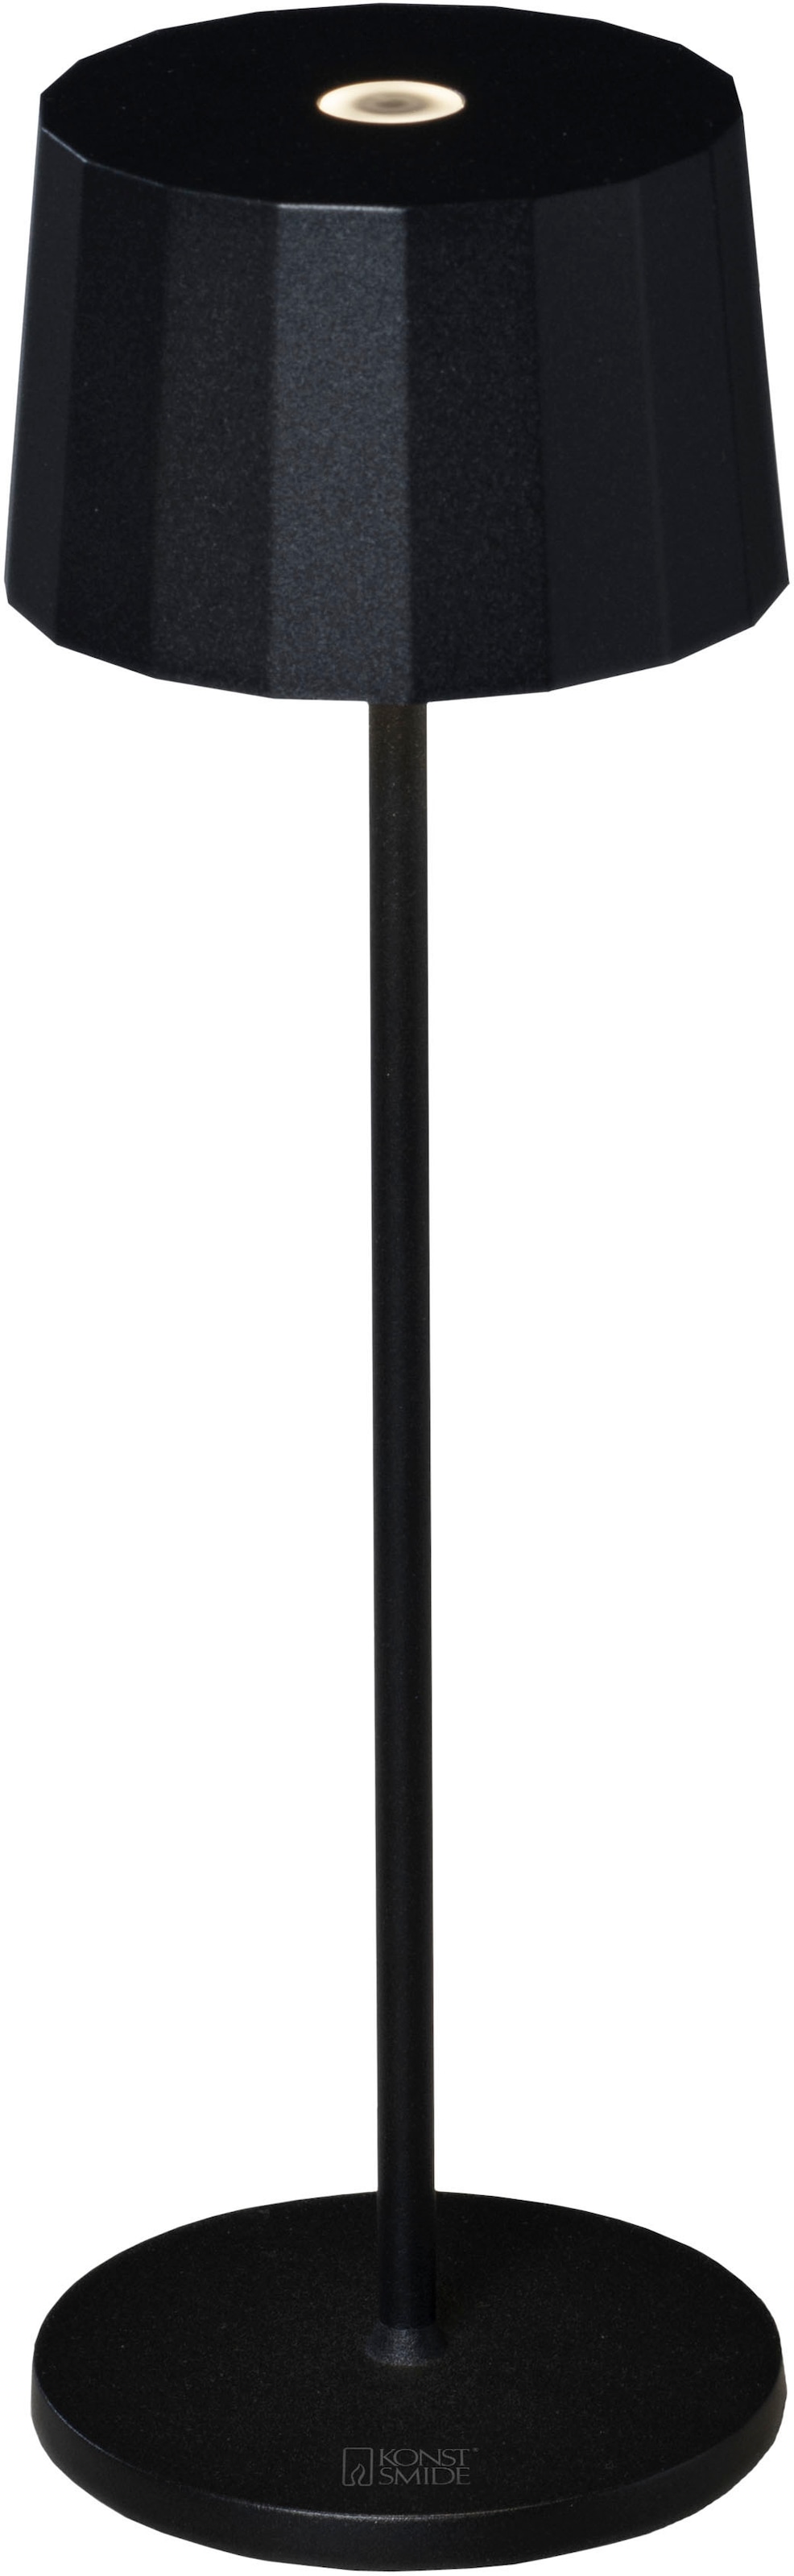 KONSTSMIDE LED Tischleuchte »Positano«, Positano LED USB-Tischleuchte schwarz, Farbtemperatur, dimm